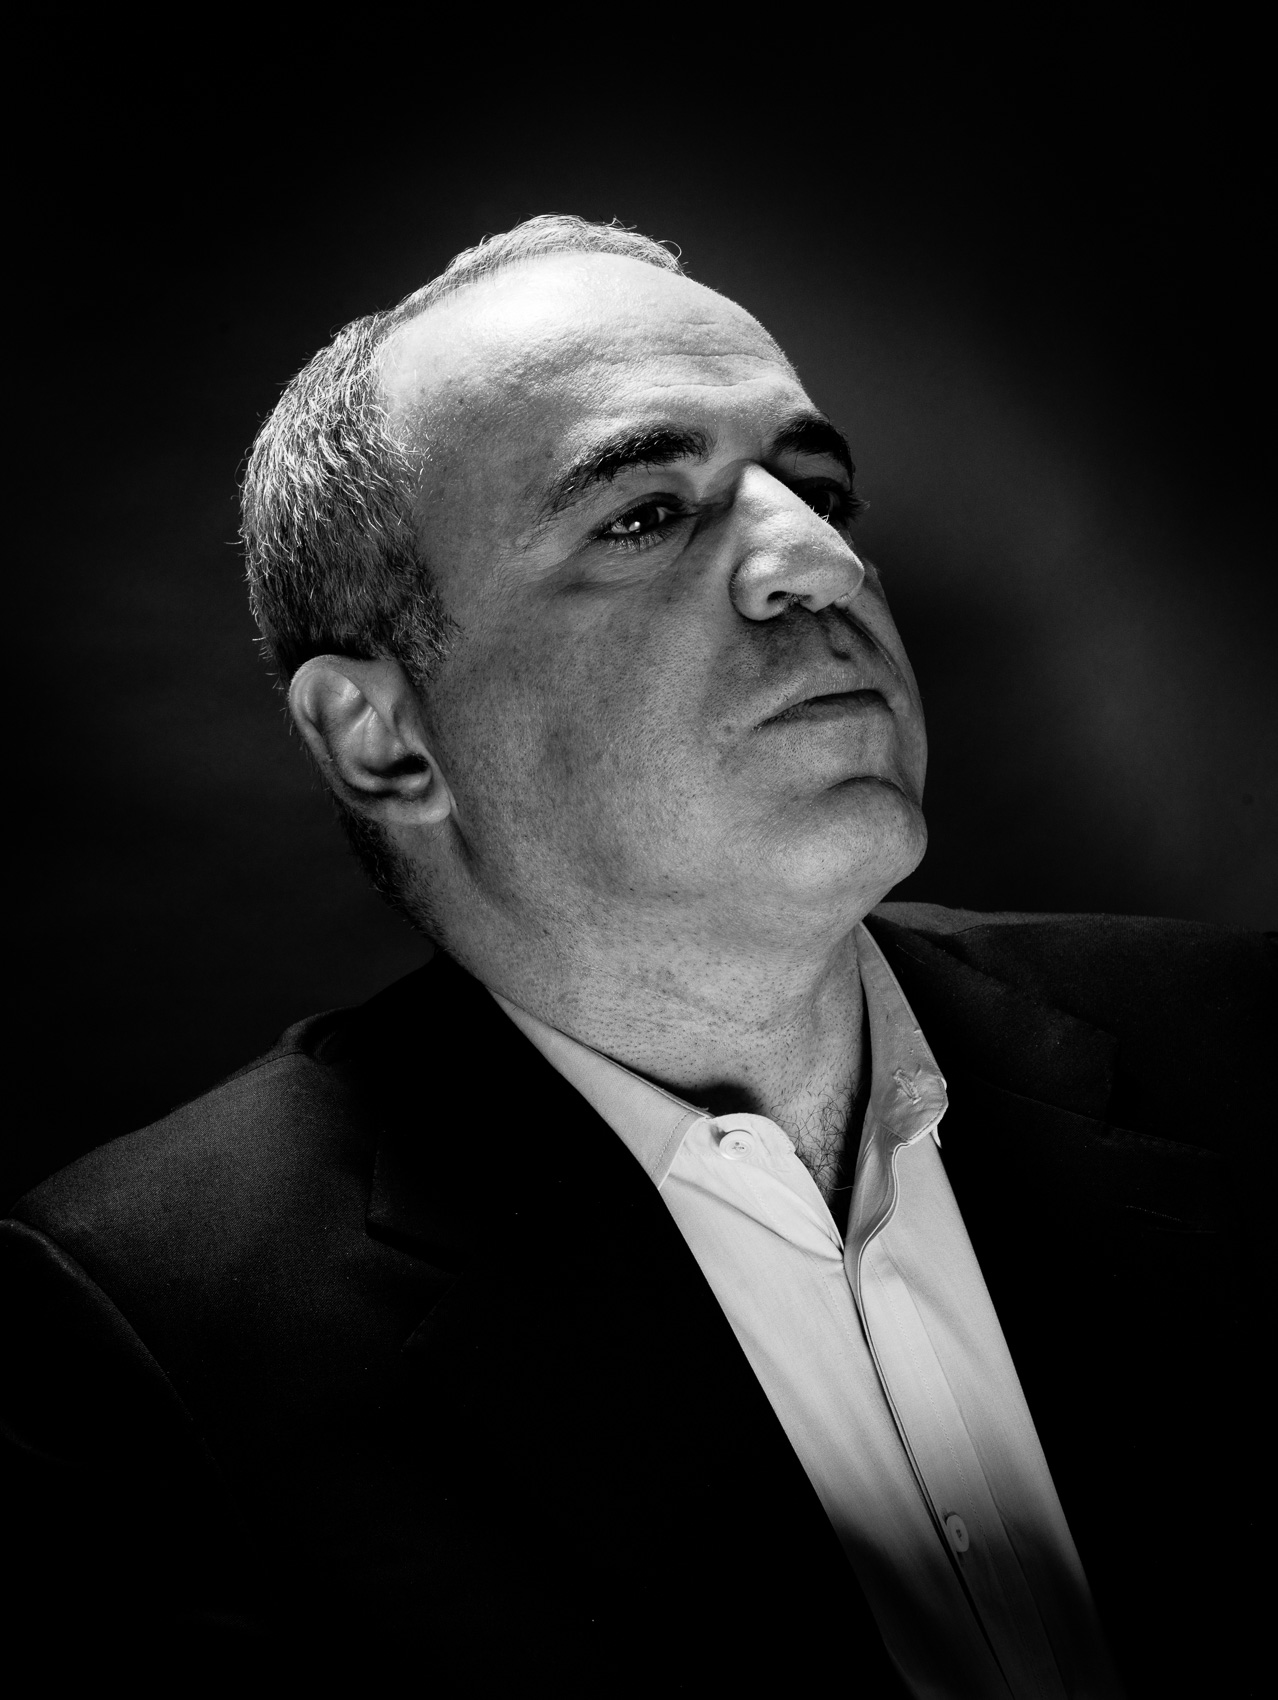 Garry Kasparov / Chess Grandmaster